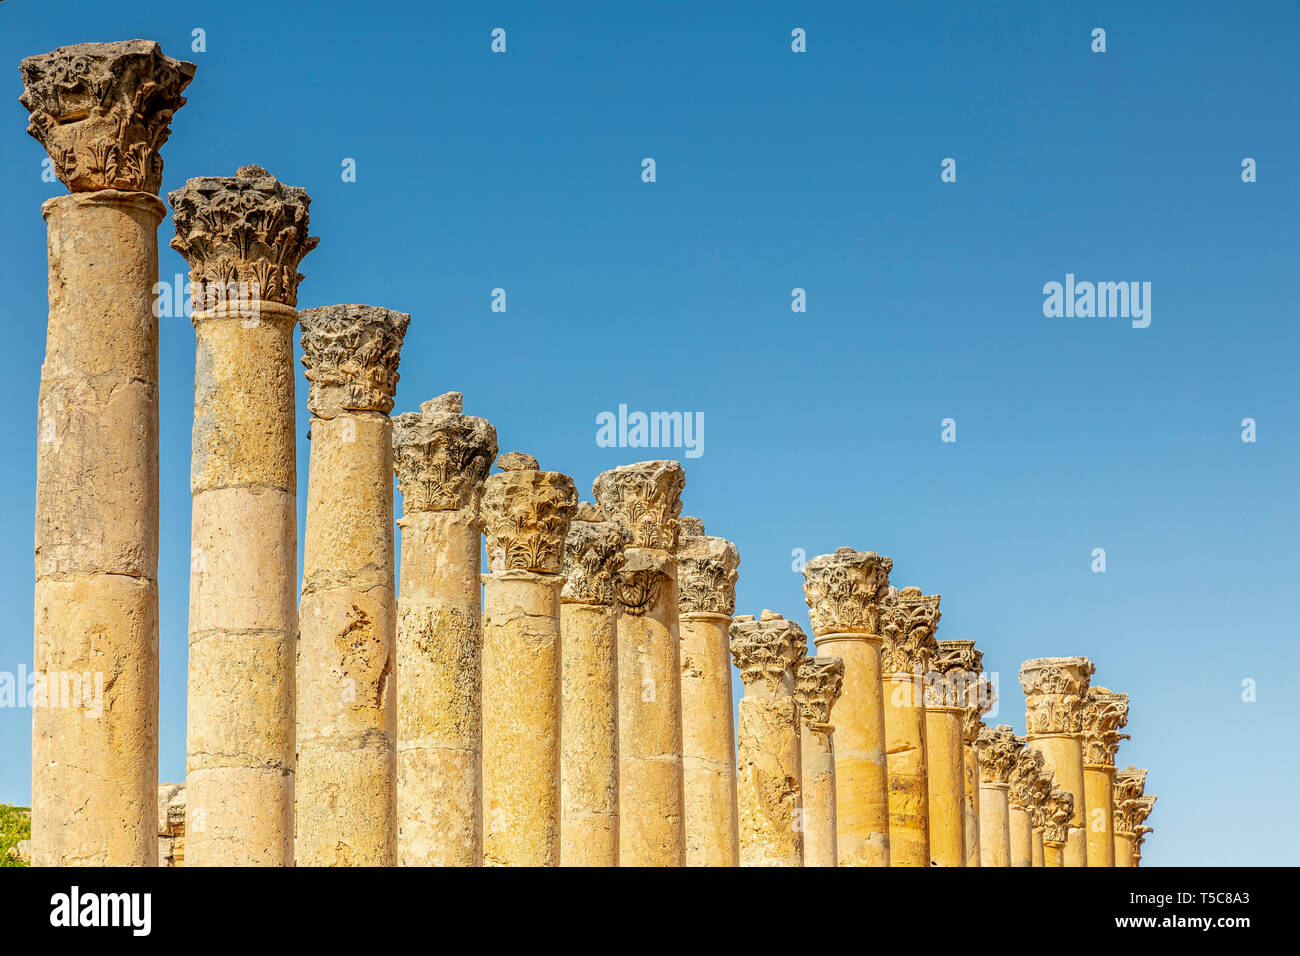 Amman, Jordanie. détail des colonnes romaines à l'intérieur de la citadelle, site archéologique connu de destination touristique. Banque D'Images